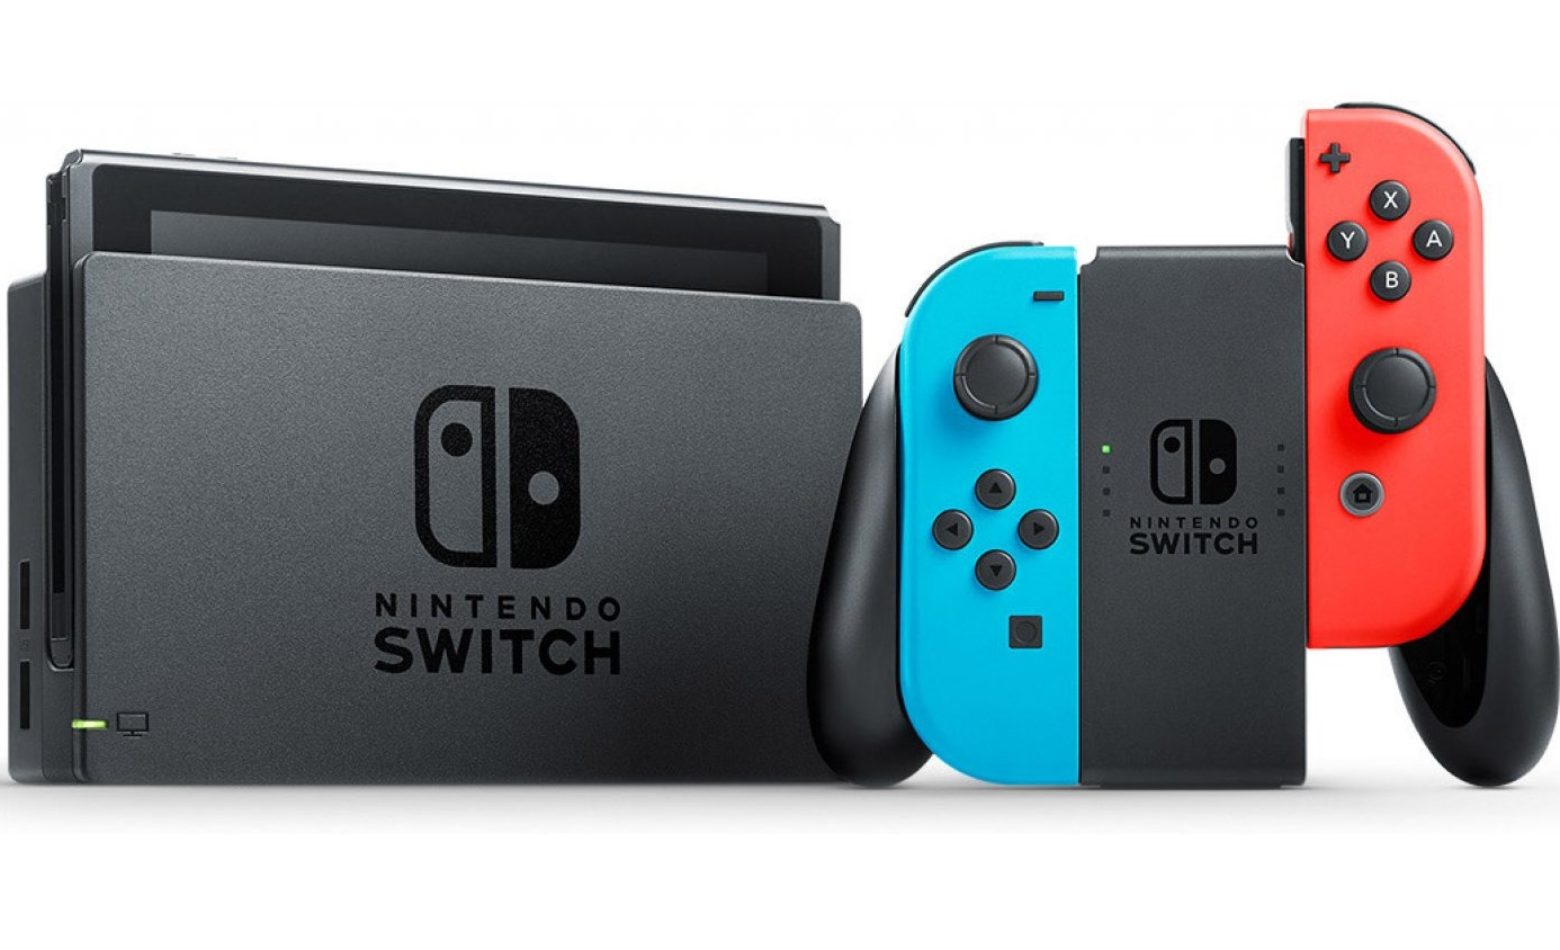 Mercado Livre suspende vendas do Nintendo Switch [ATUALIZADO]